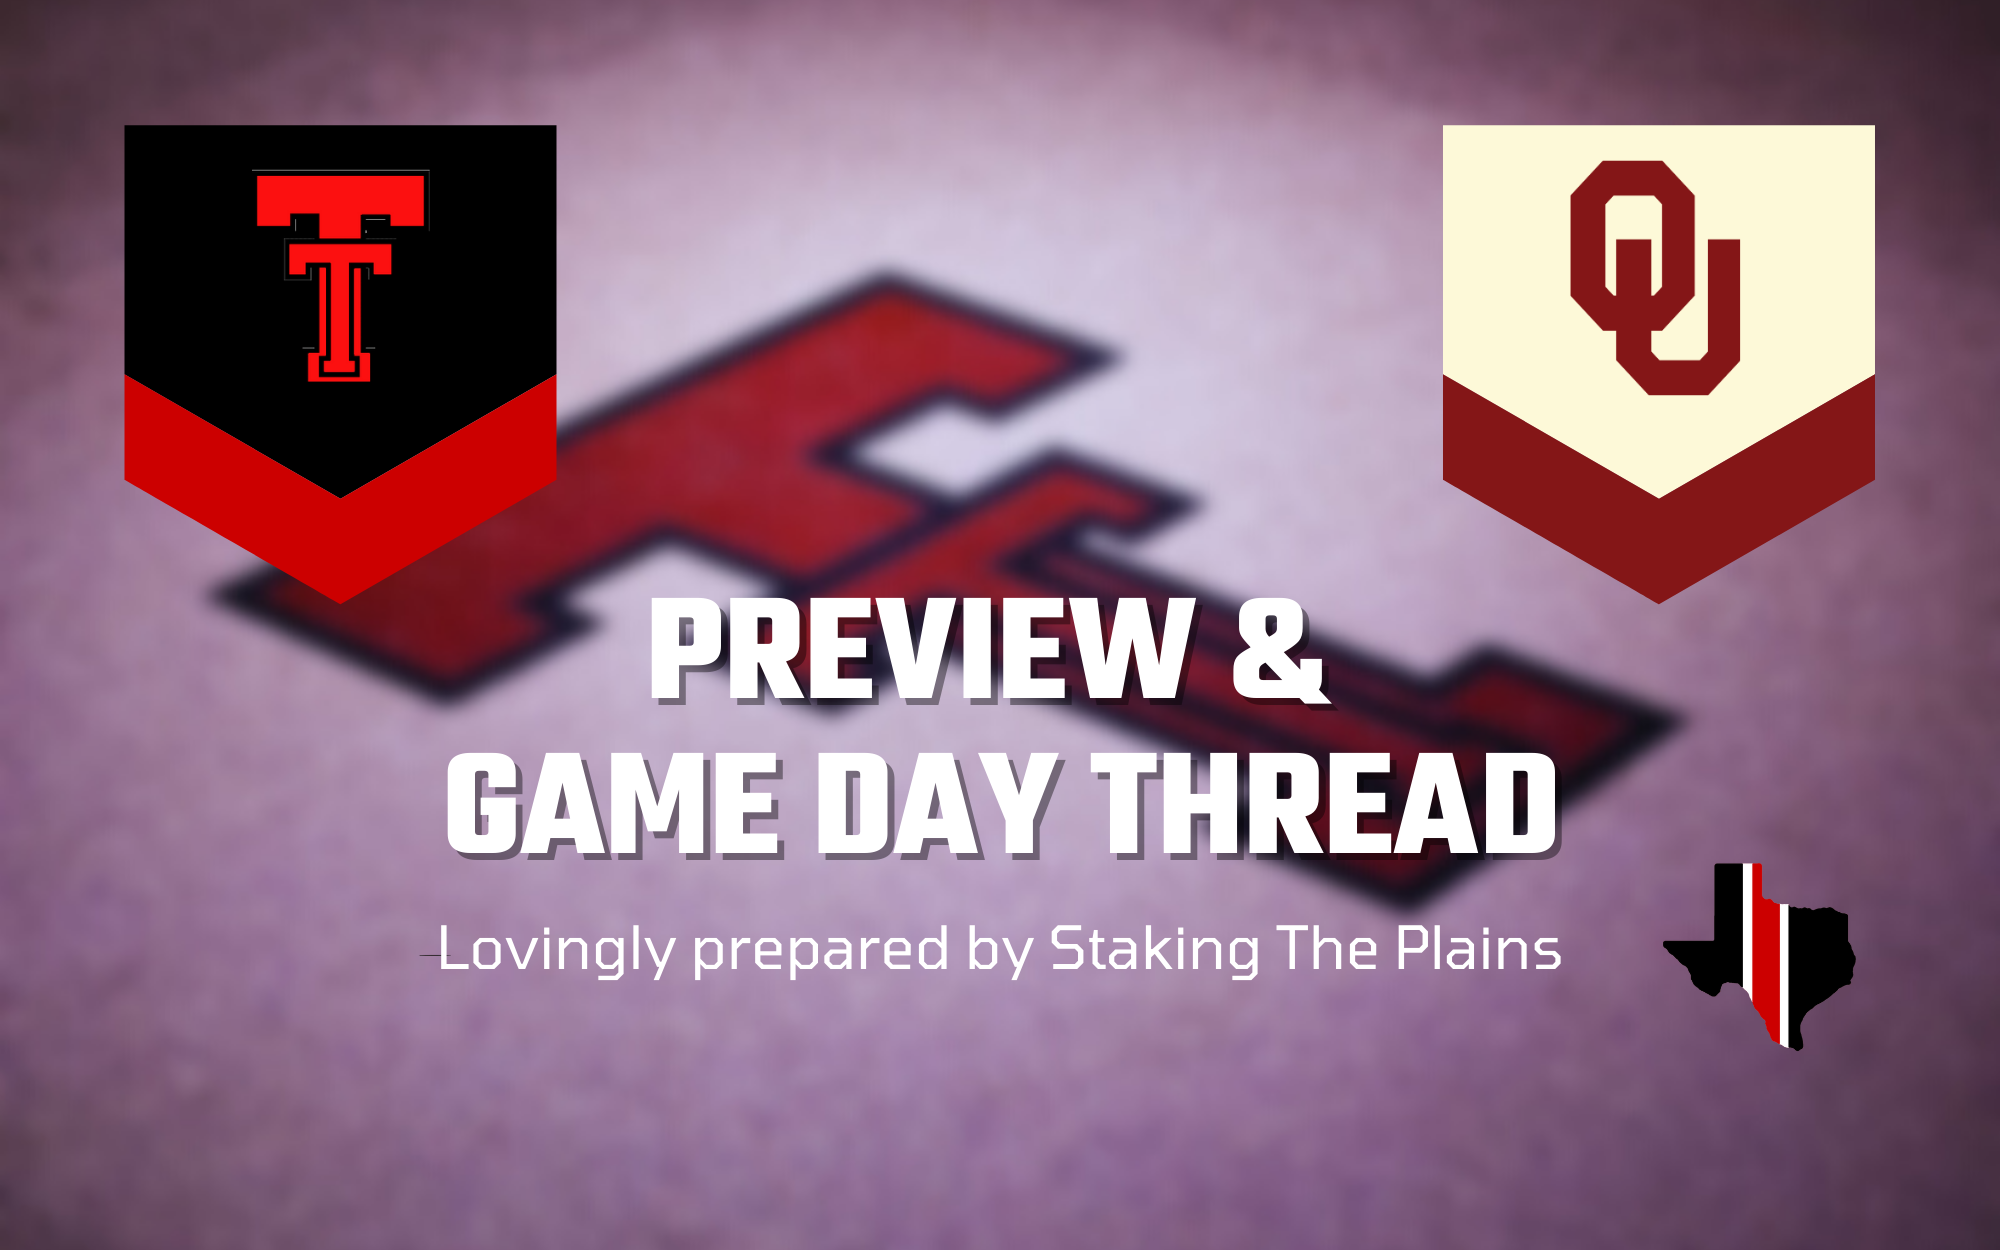 Preview & Game Day Thread: Texas Tech vs. Oklahoma